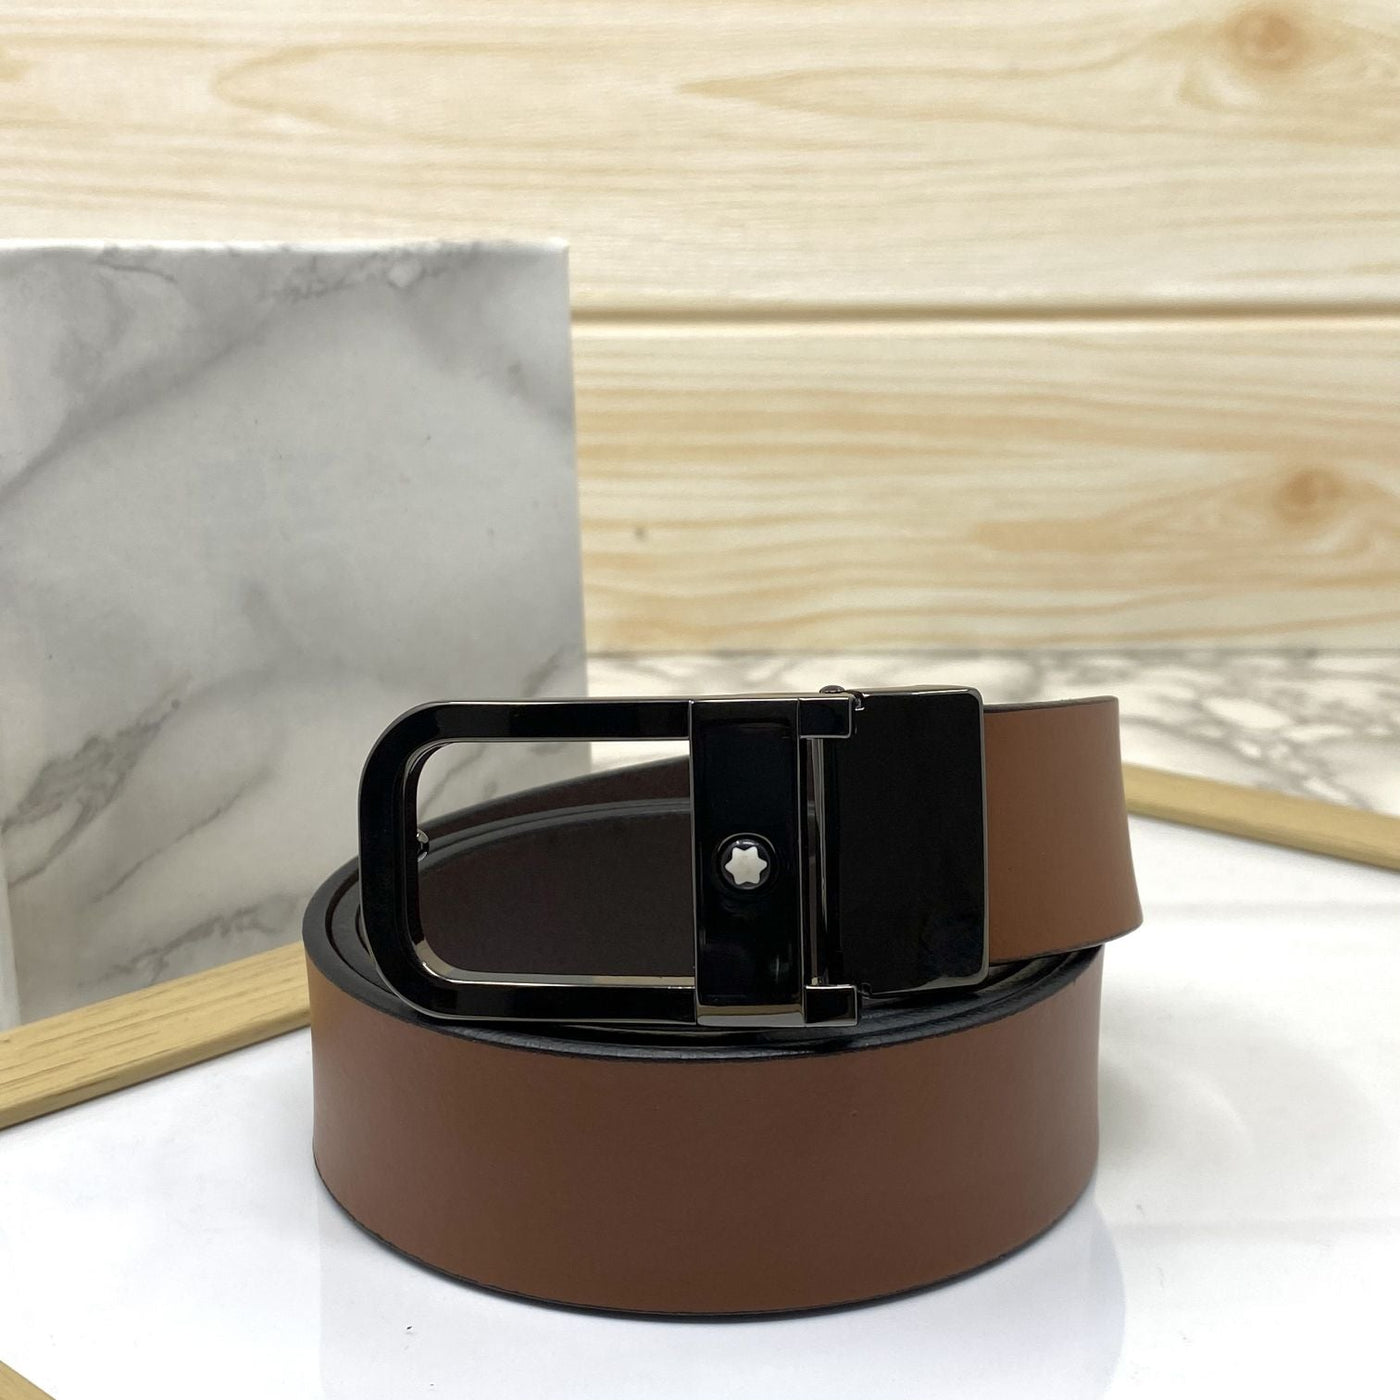 Casual U-Shape Leather Strap Belt For Men-UniqueandClassy